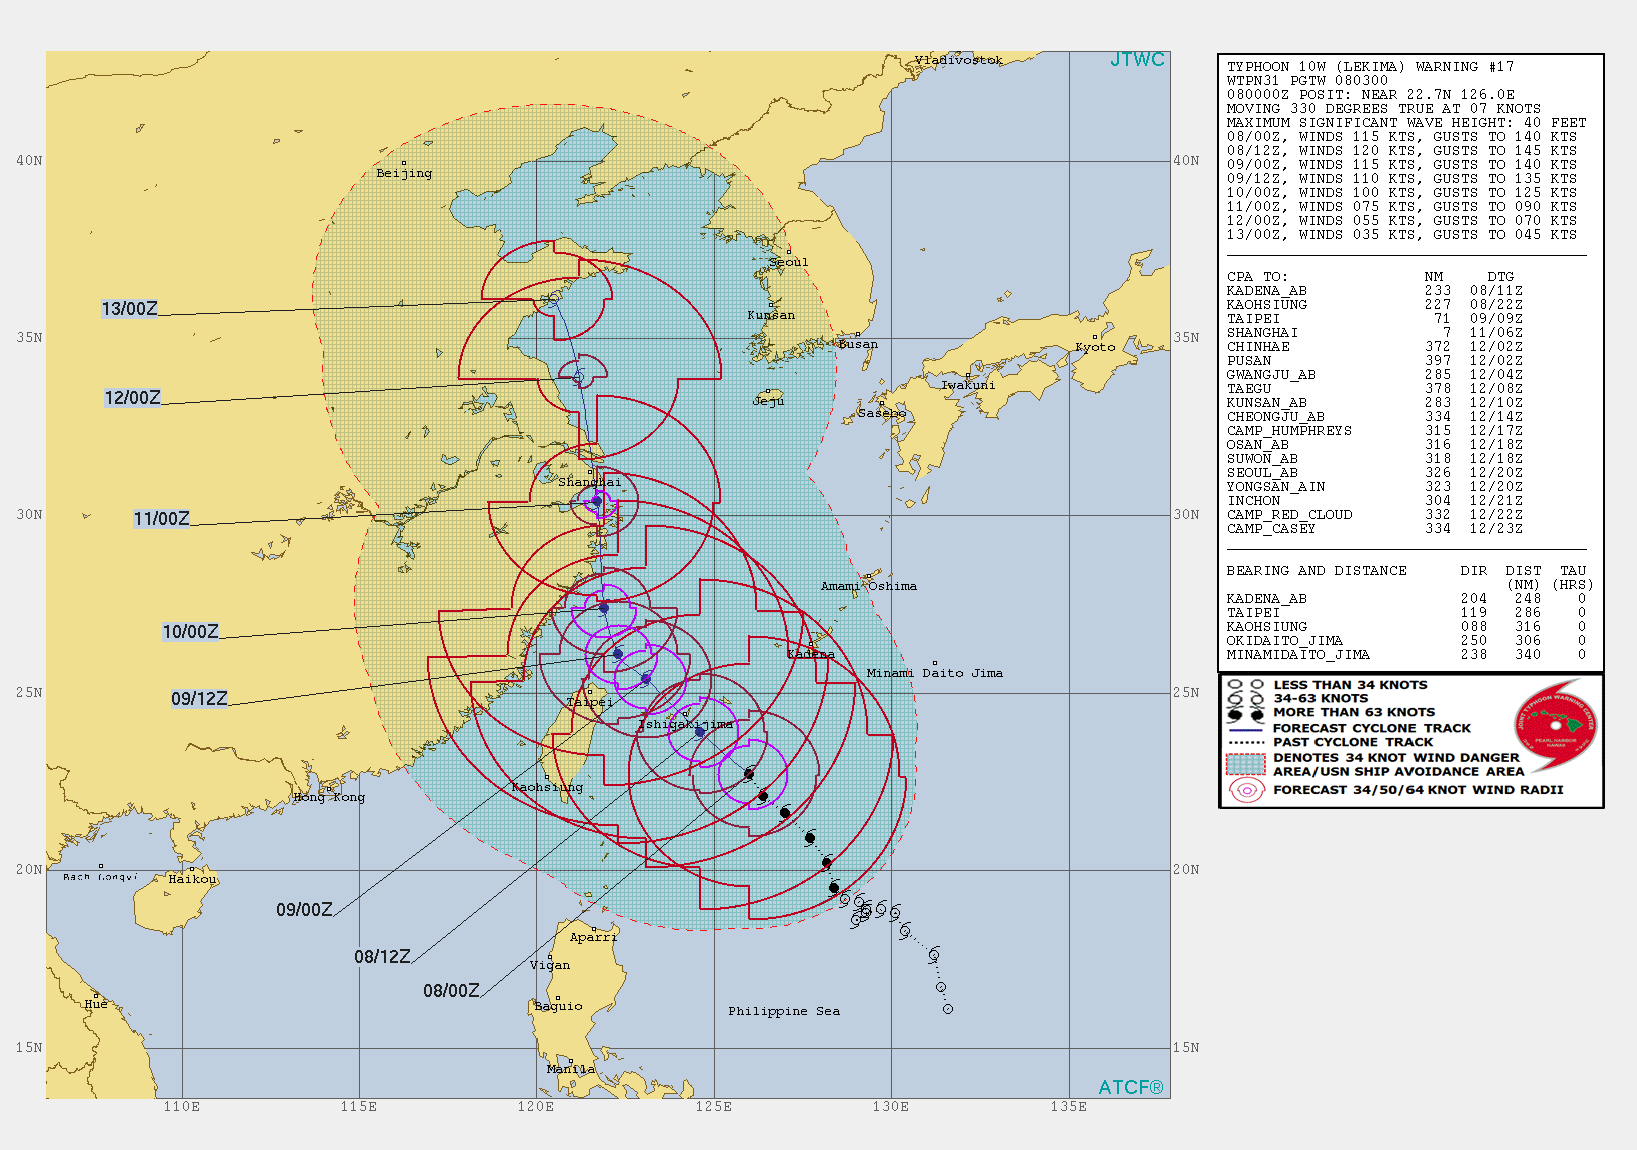 10W: WARNING 17/JTWC